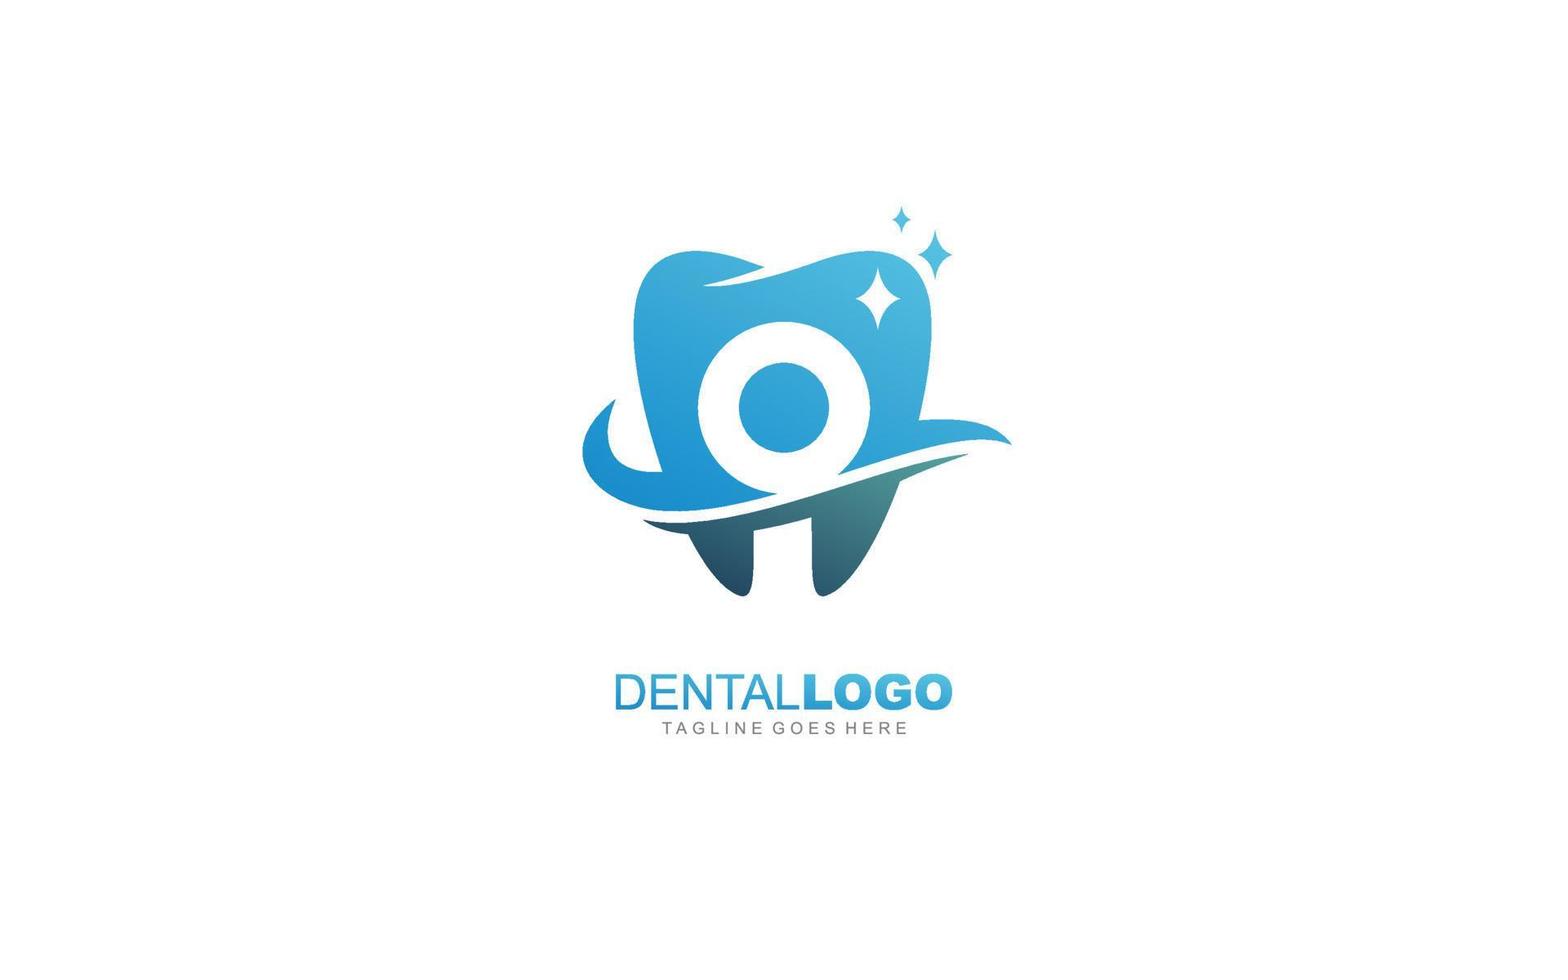 O  logo dentist for branding company. letter template vector illustration for your brand.